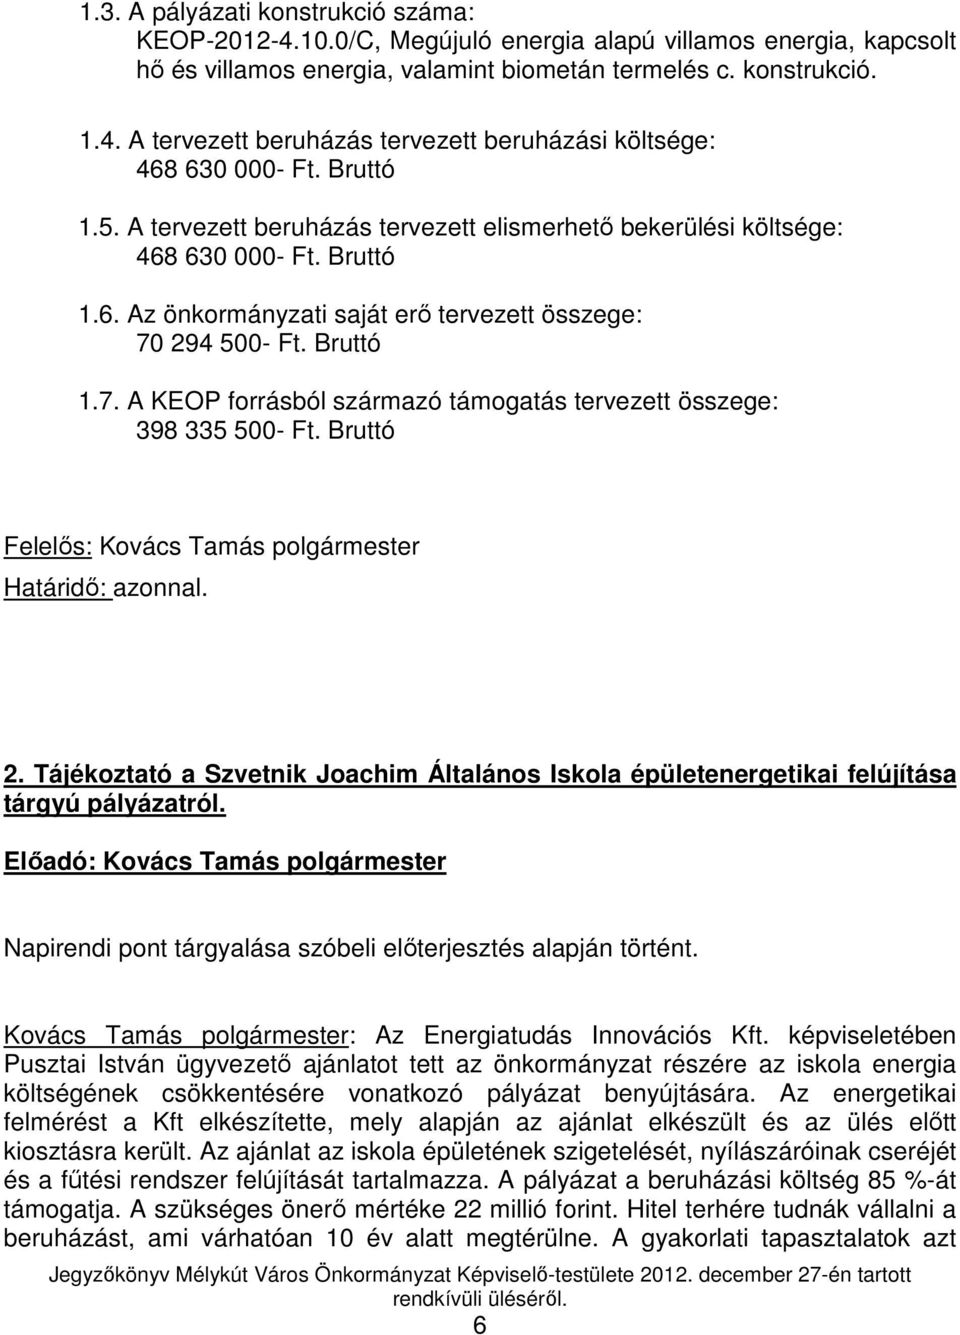 294 500- Ft. Bruttó 1.7. A KEOP forrásból származó támogatás tervezett összege: 398 335 500- Ft. Bruttó Felelıs: Kovács Tamás polgármester Határidı: azonnal. 2.